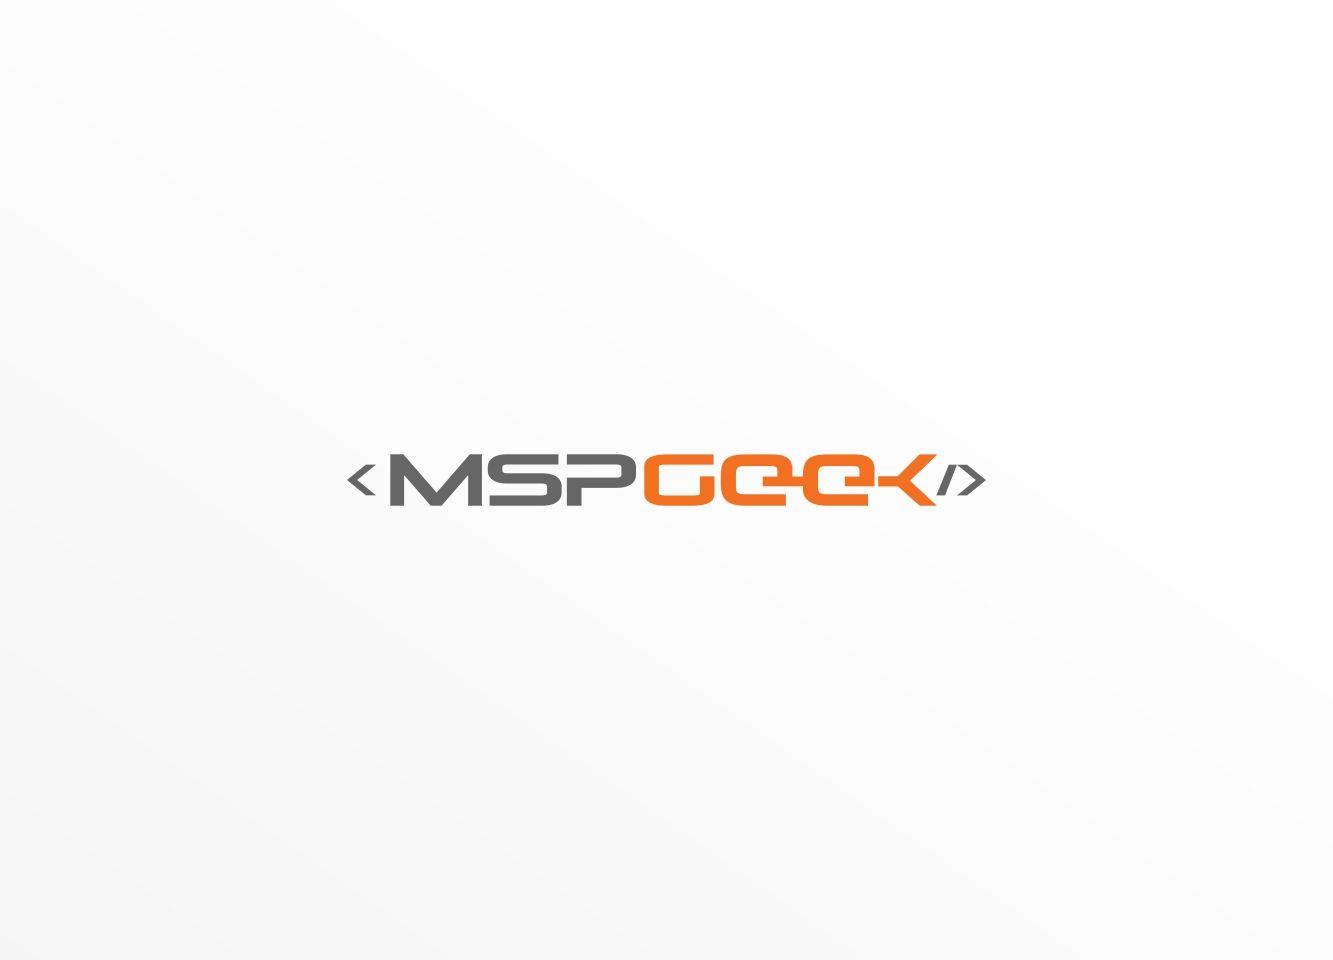 Msep Logo - Modern, Conservative, Information Technology Logo Design for MSPGeek